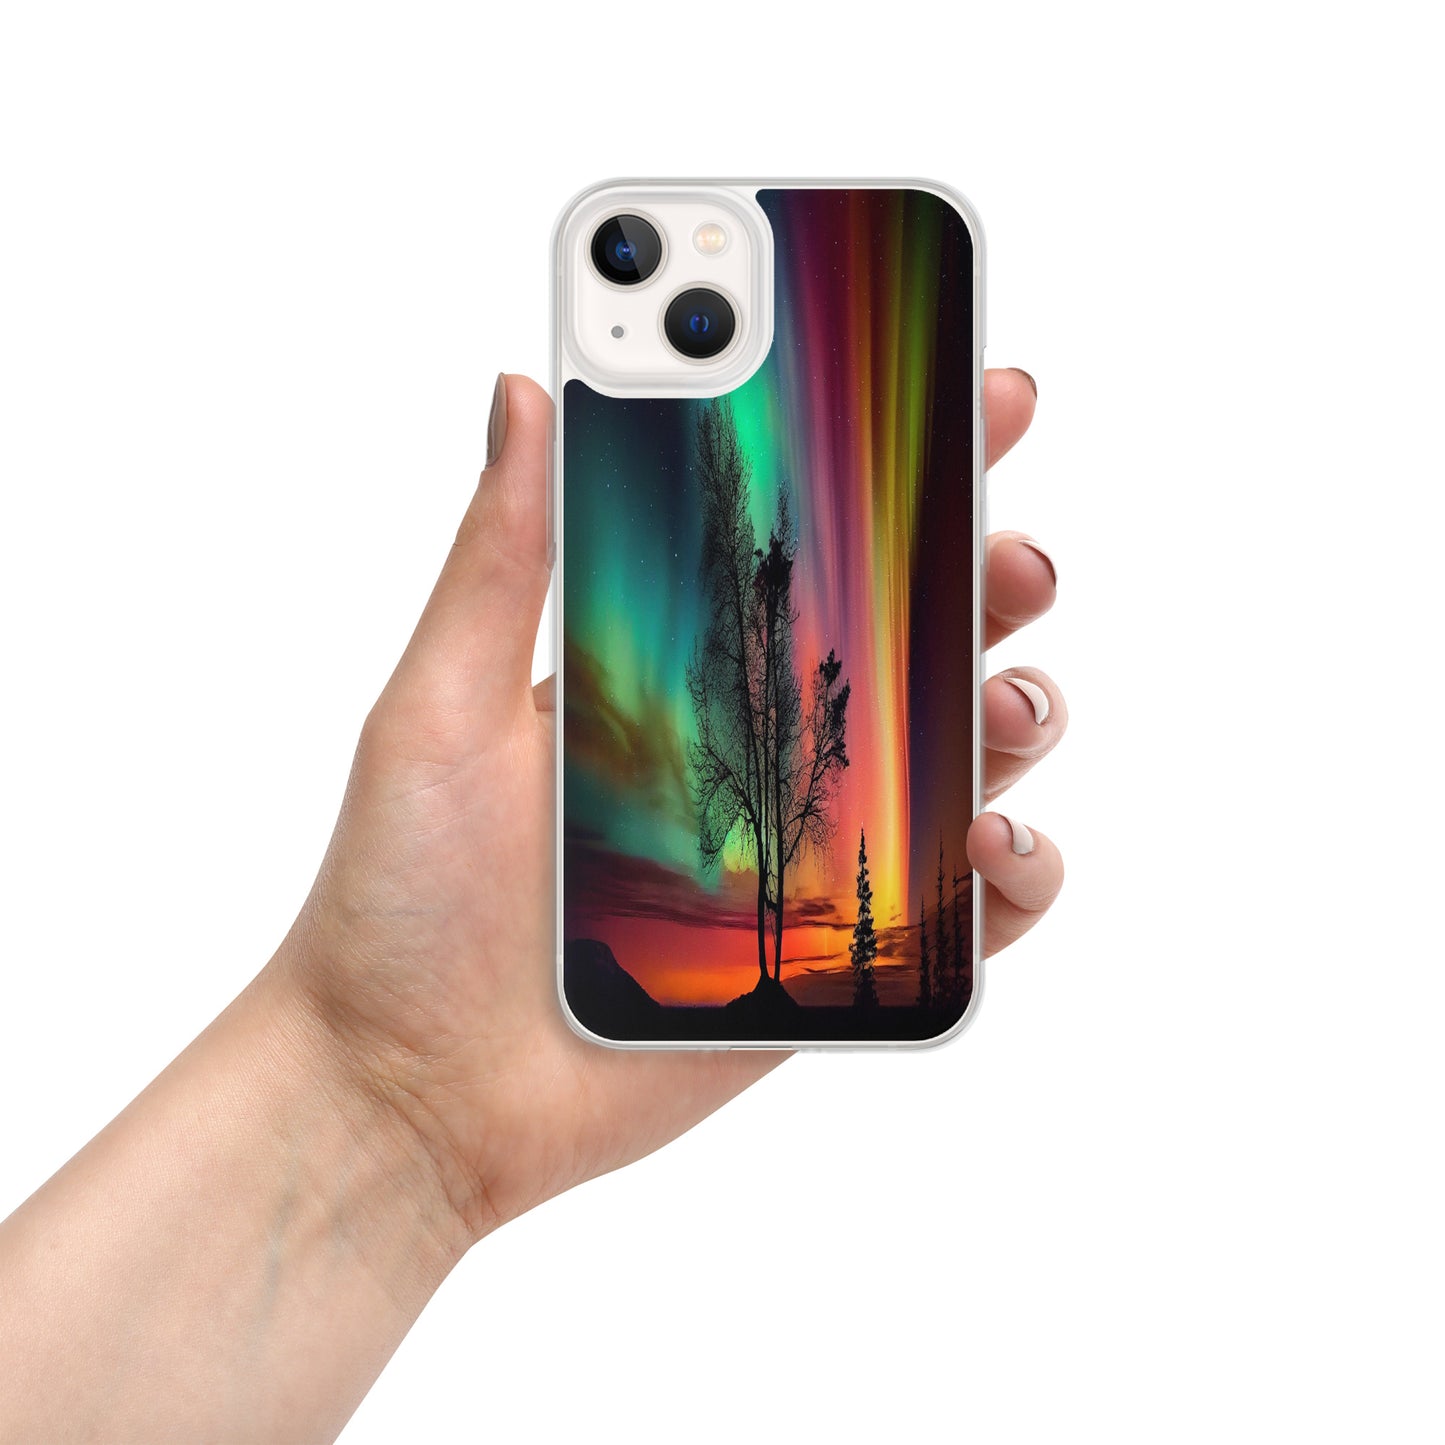 Unique Aurora Borealis iPhone Cover Case - Northern Light Phone Cover Case - Clear Case for iPhone - Perfect Aurora Lovers Gift 11